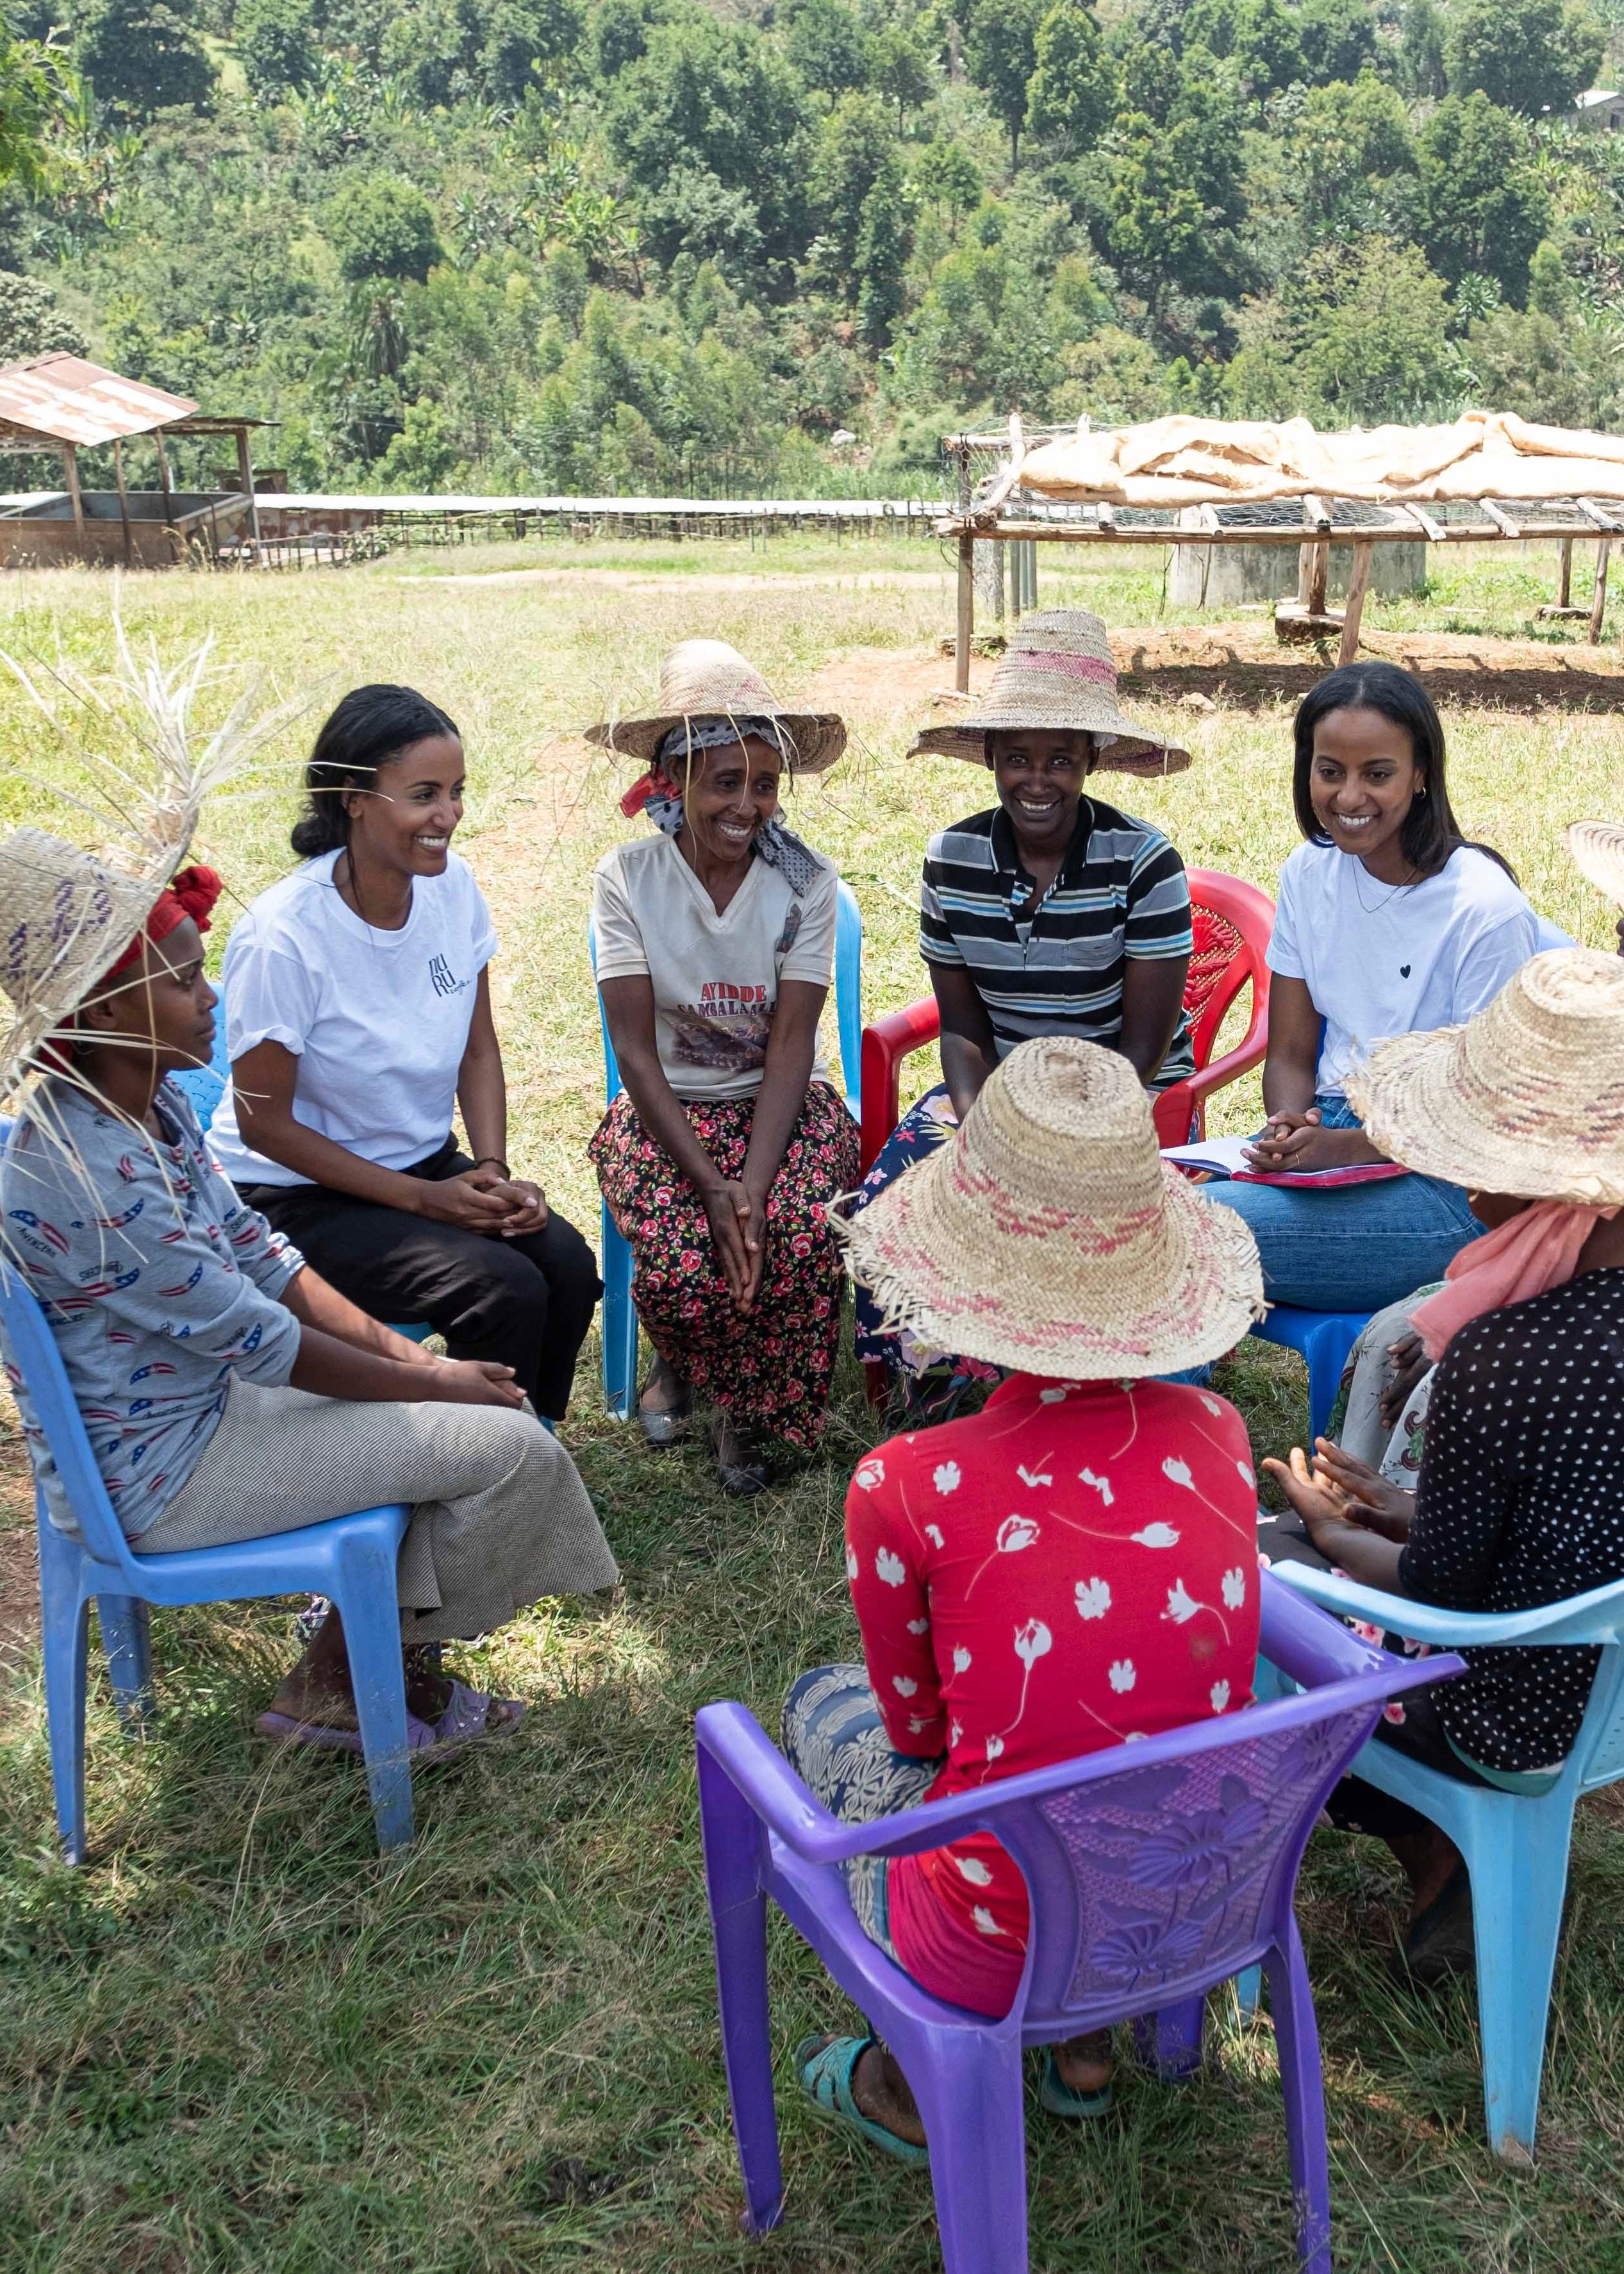 Gründerinnen Sali und Sara mit Frauen in Äthiopien / social impact des Kaffees: nuruwomen - Mit nachhaltigem Kaffee Frauenprojekte in Äthiopien unterstützen